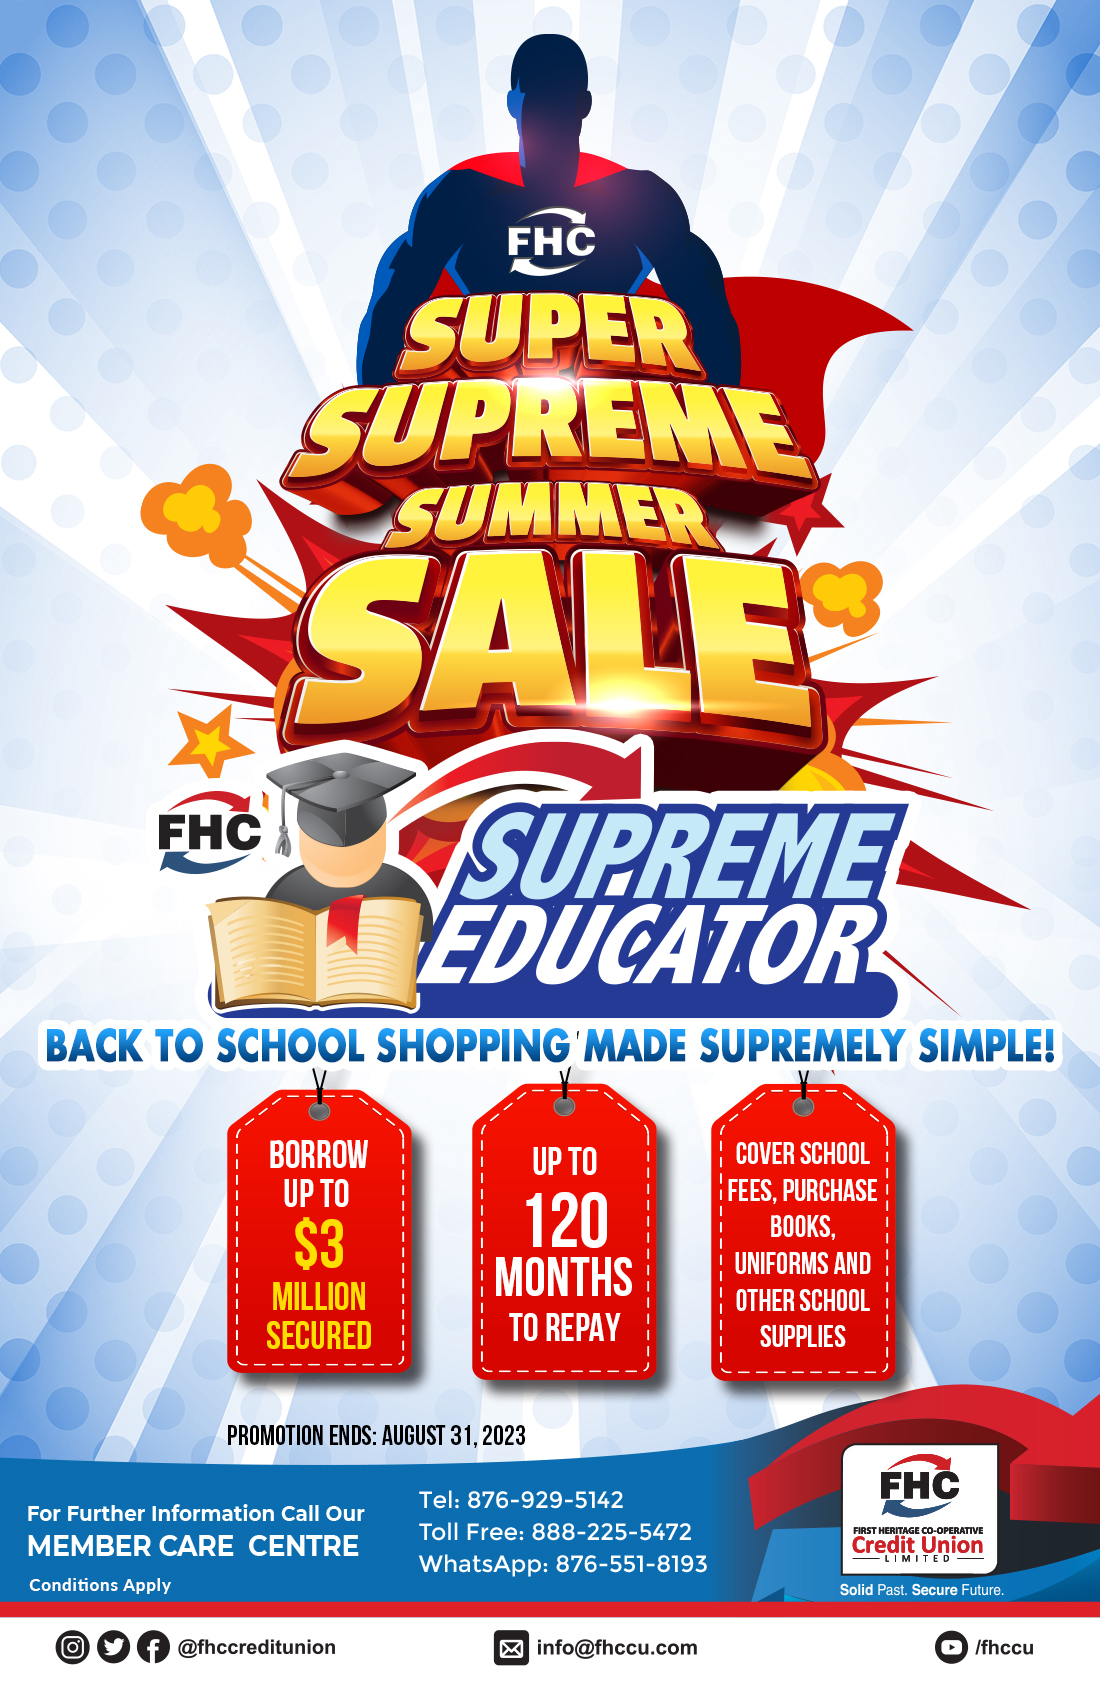 FHC Super Summer Sale 1C Supreme Educator Secured 2023